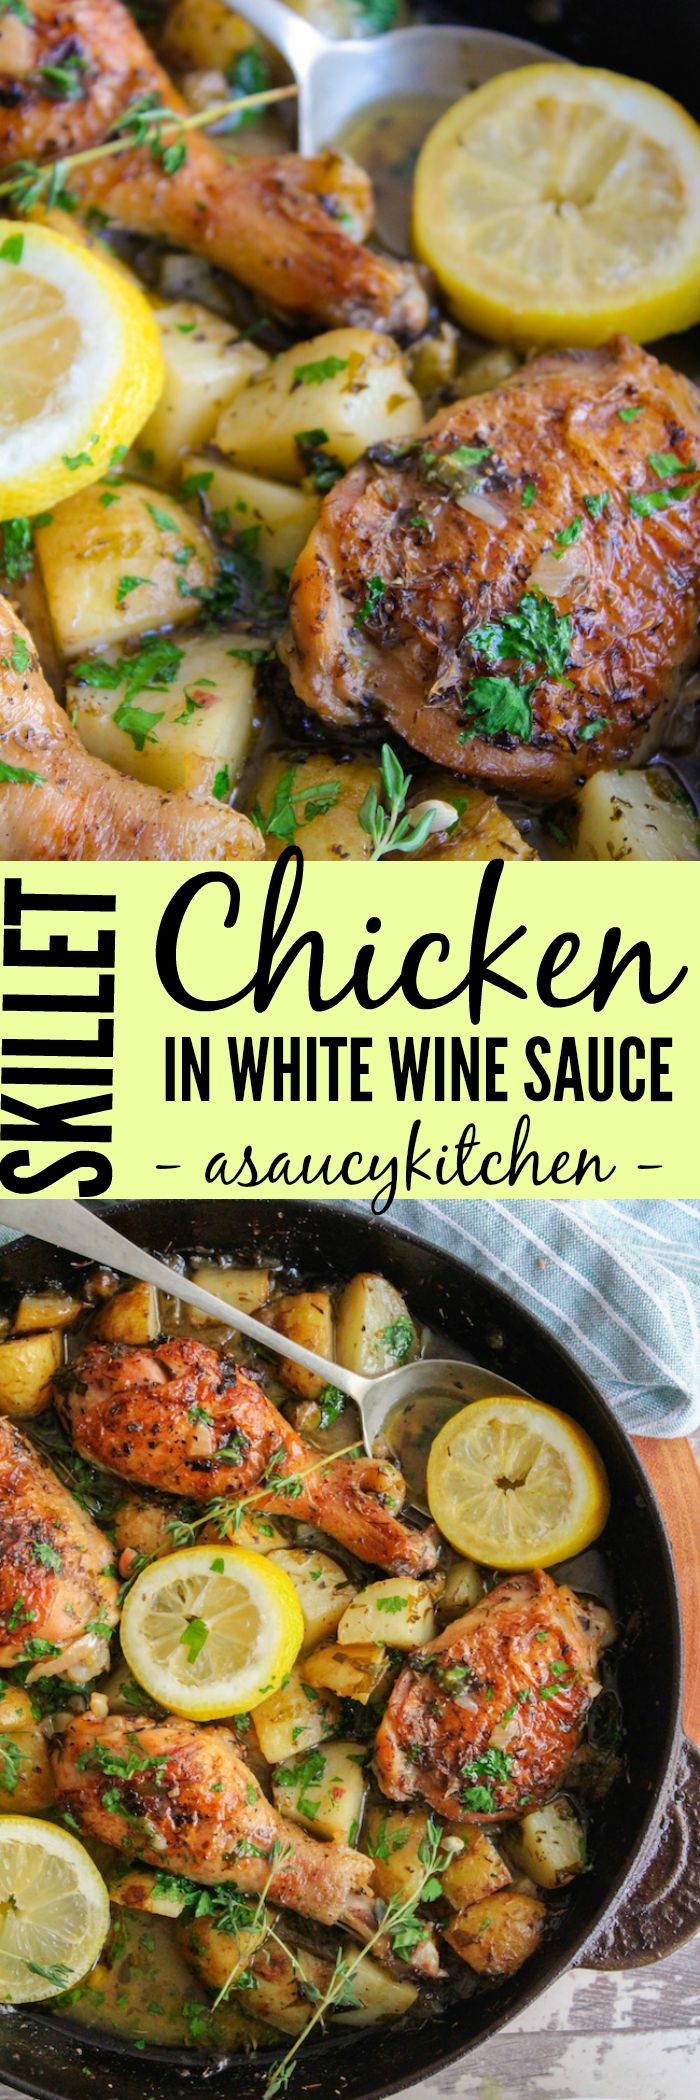 Skillet Chicken in White Wine Sauce www.asaucykitchen.com